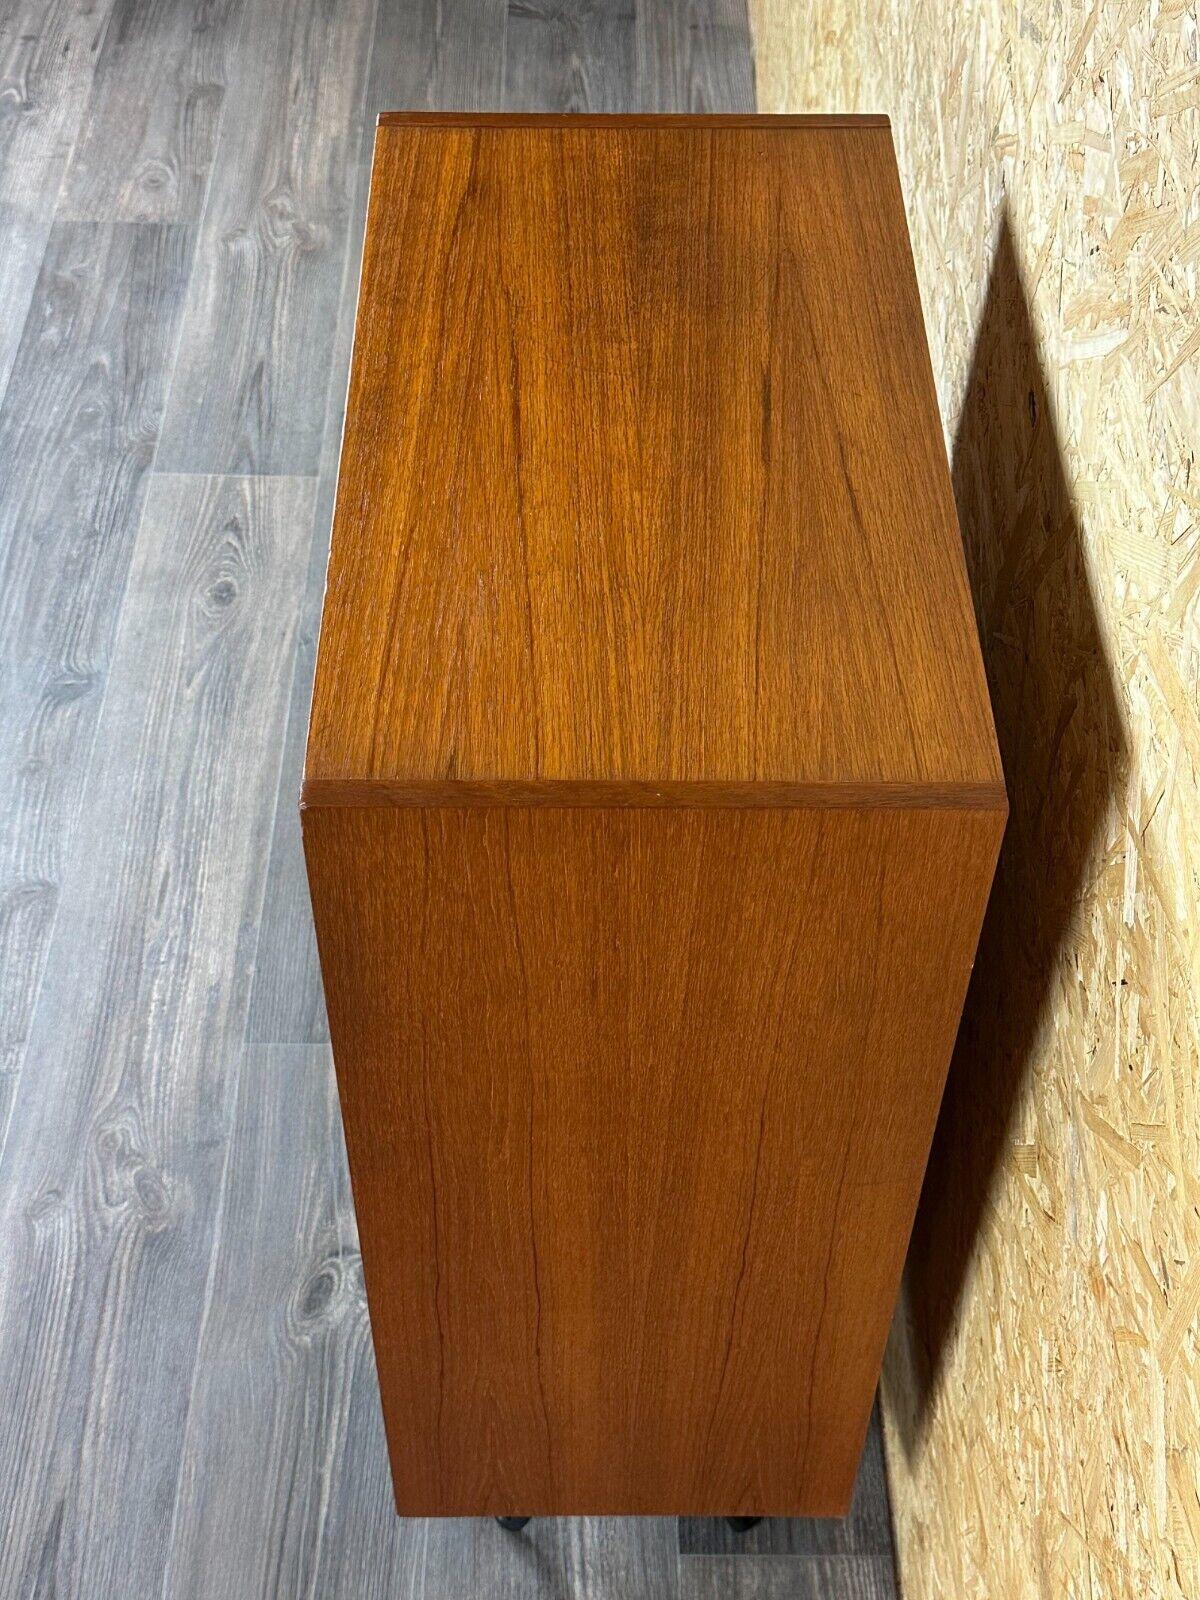 60s 70s teak sideboard chest of drawers cabinet Danish Modern Design Denmark 1